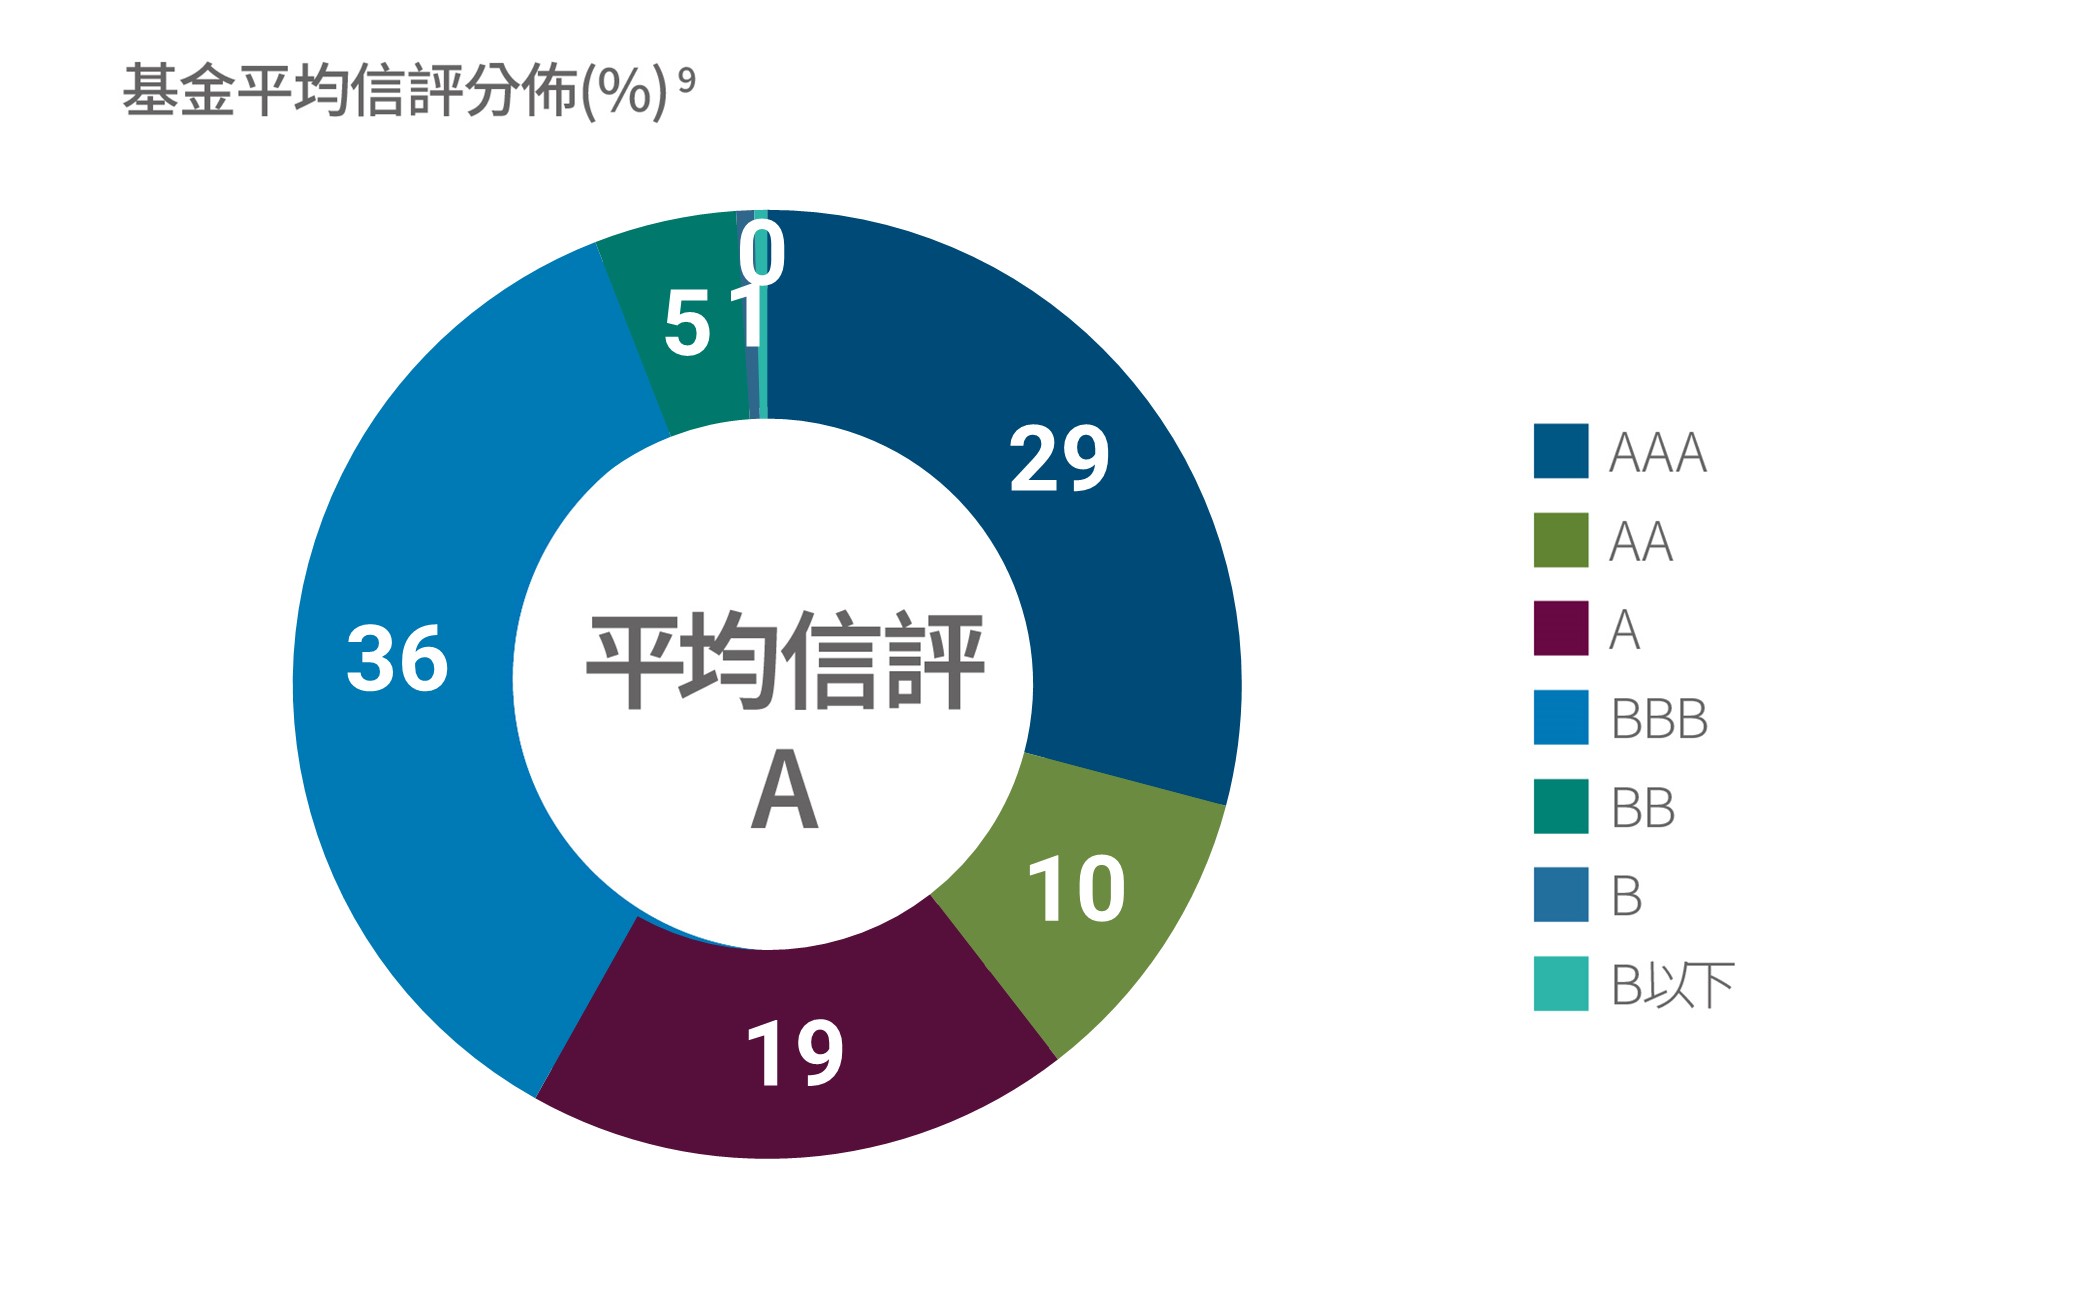 基金平均信評分布：AAA占22%、AA占11%、A占19%、BBB占42%、BB占5%、B占1%。